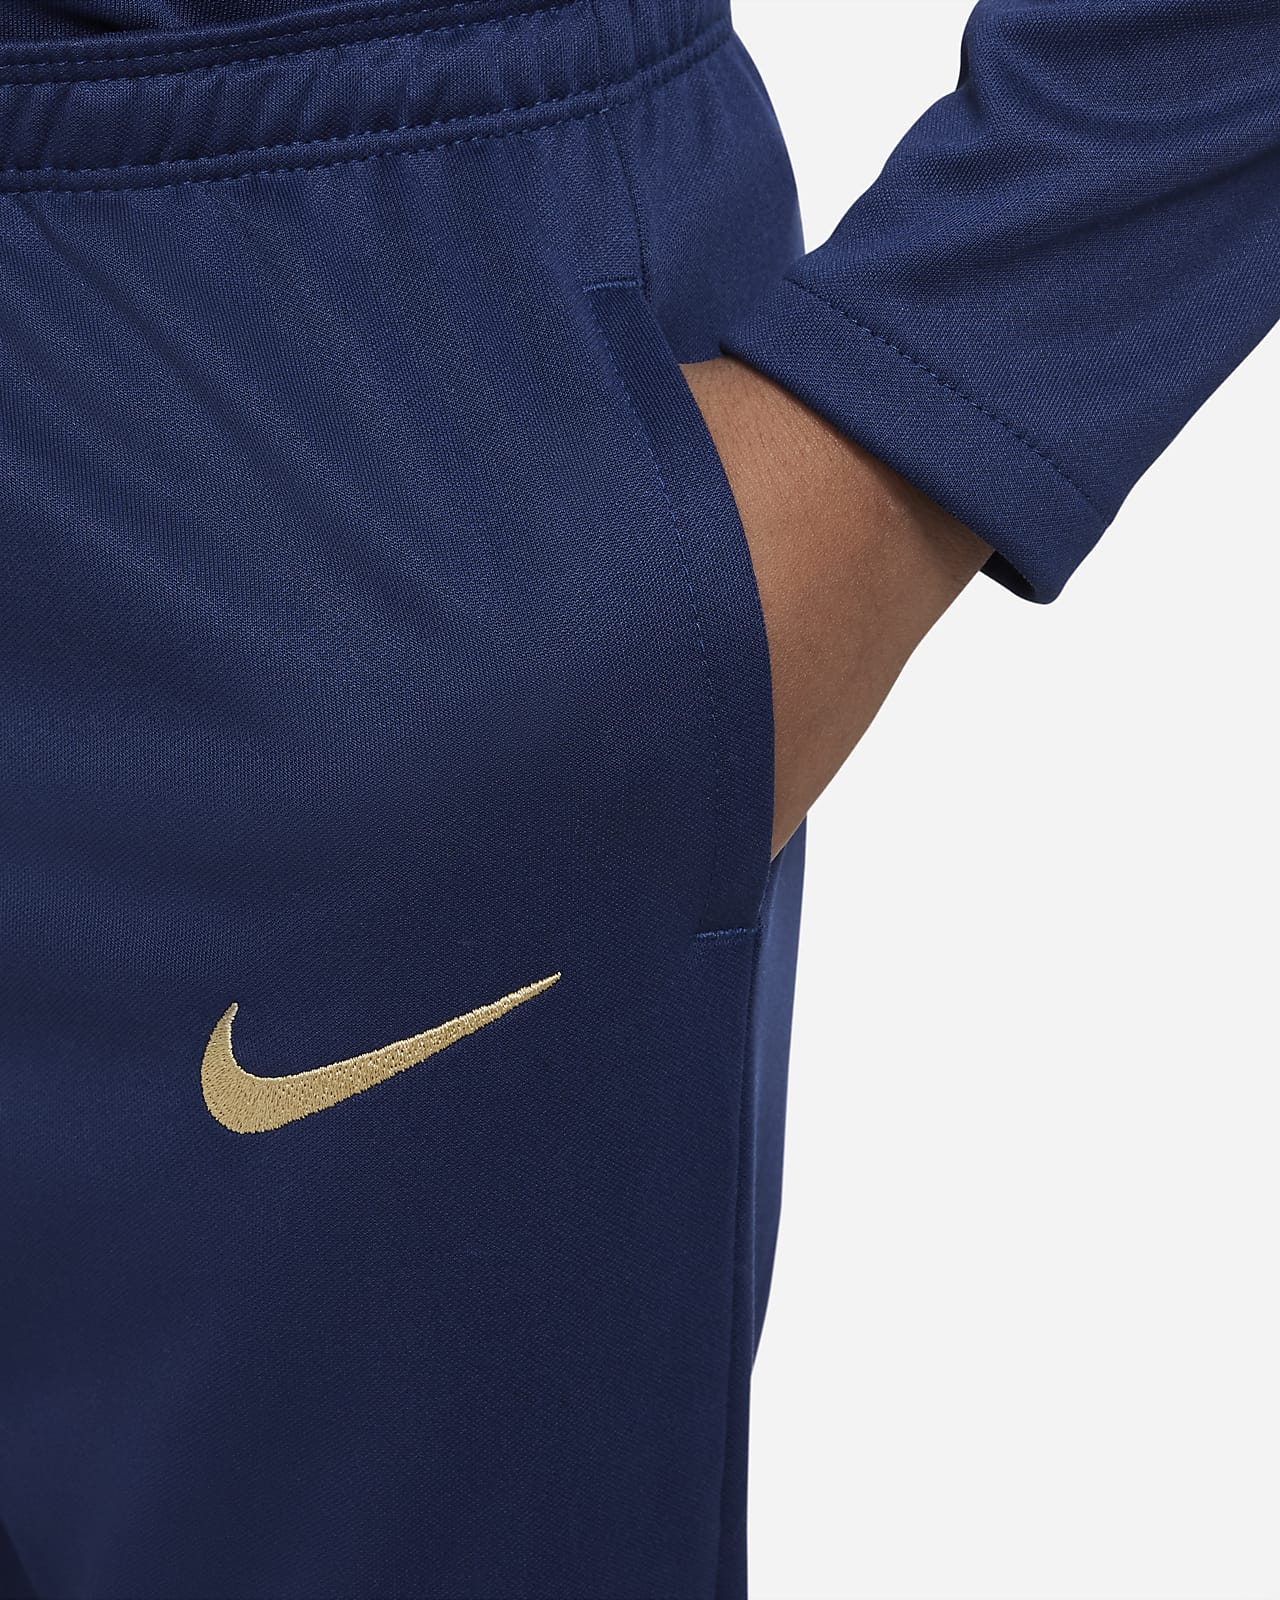 FFF Academy Pro Pantalón de fútbol Nike - Niño/a pequeño/a.